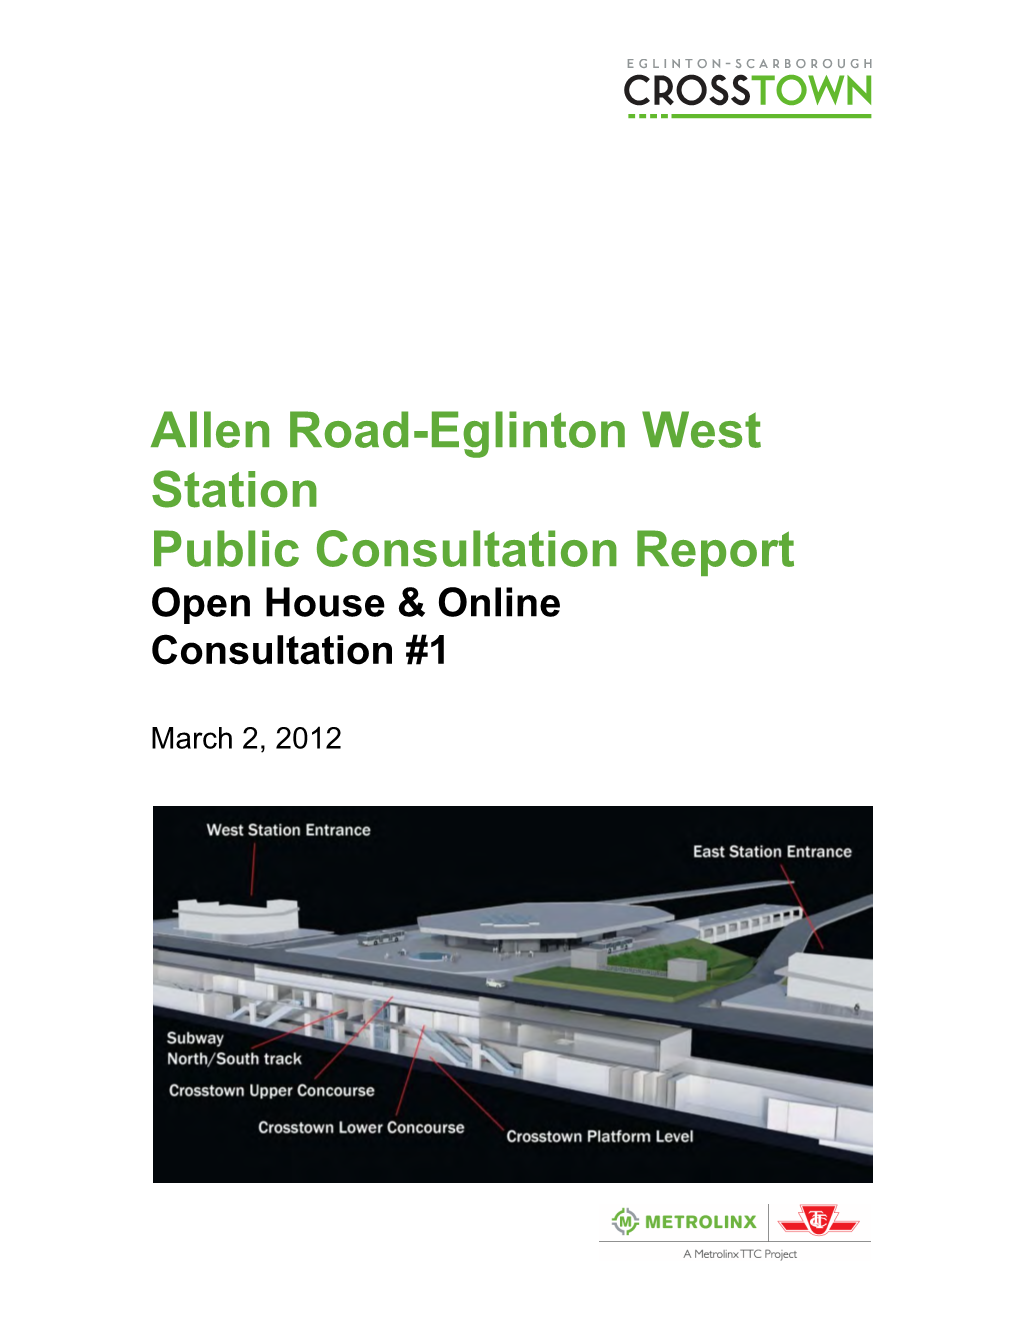 Allen Road-Eglinton West Station Public Consultation Report Open House & Online Consultation #1